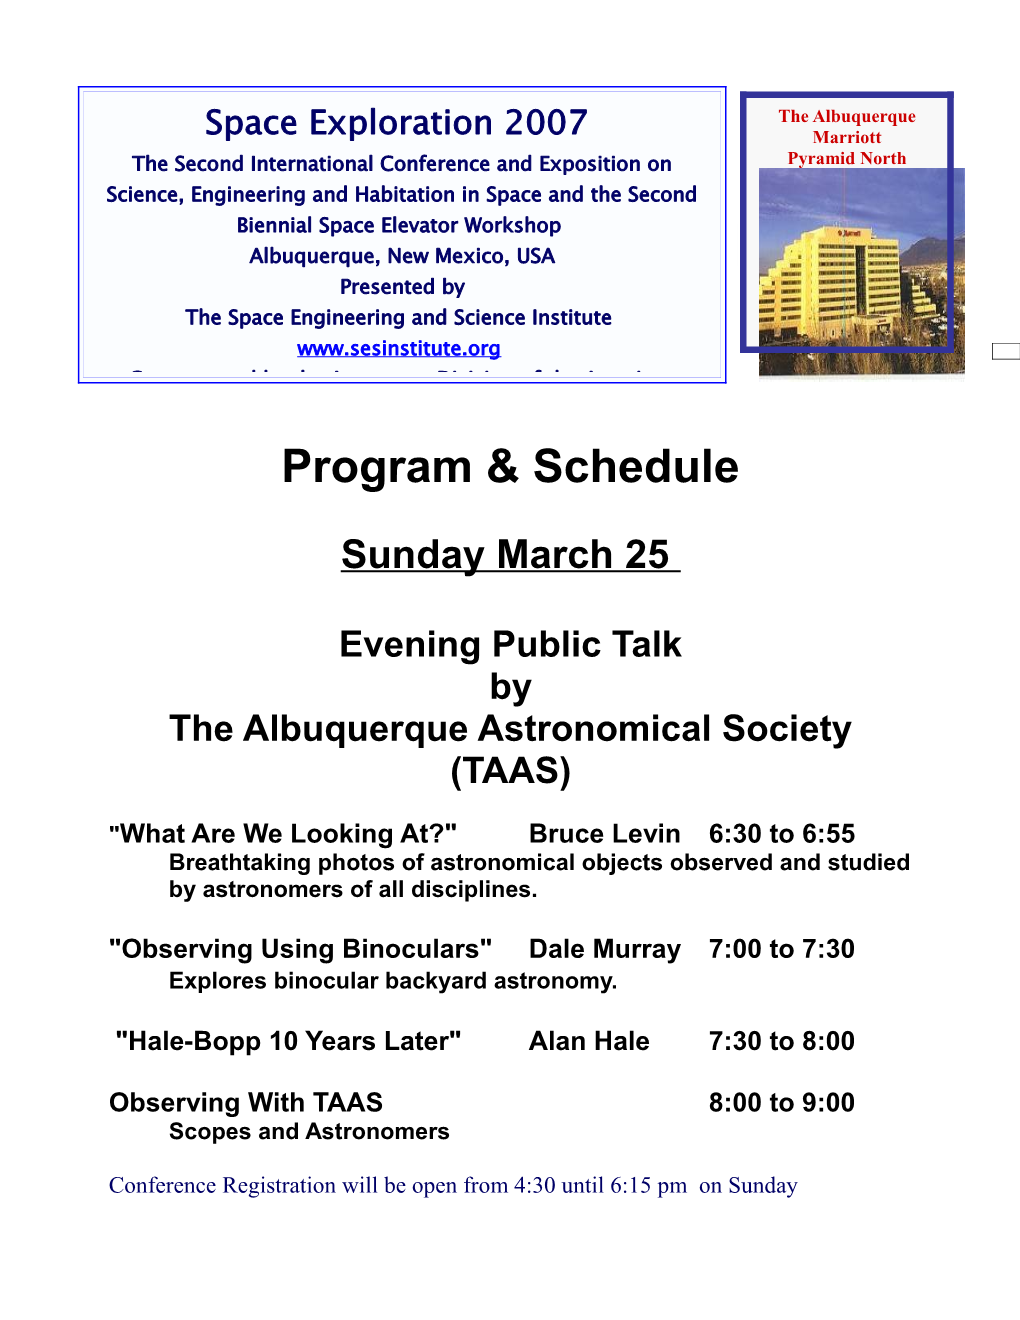 The Albuquerque Astronomical Society (TAAS)